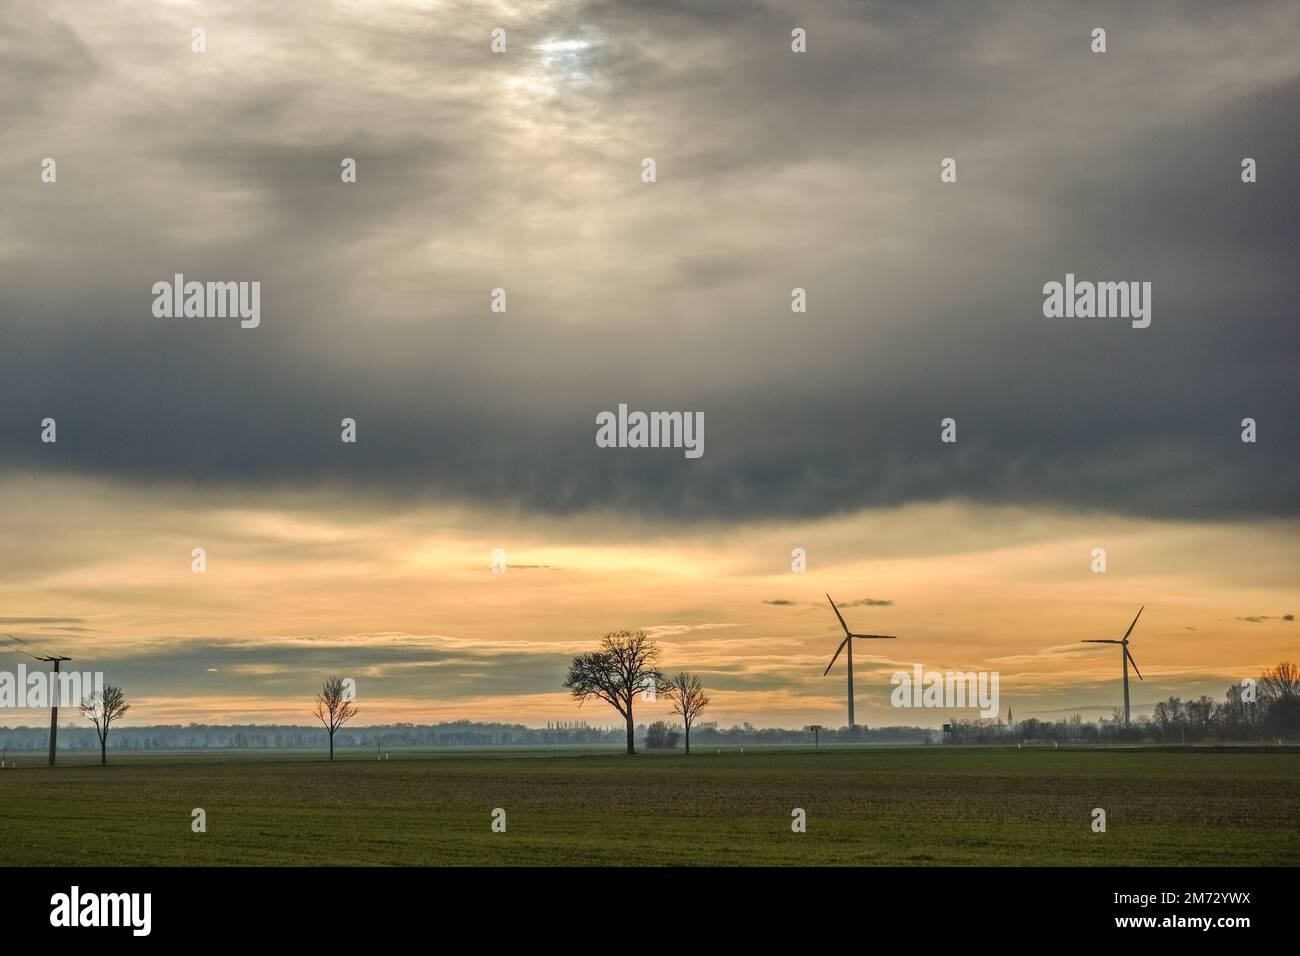 nuages gris denses sur le ciel avec des moulins à vent et des arbres dans un paysage plat Banque D'Images